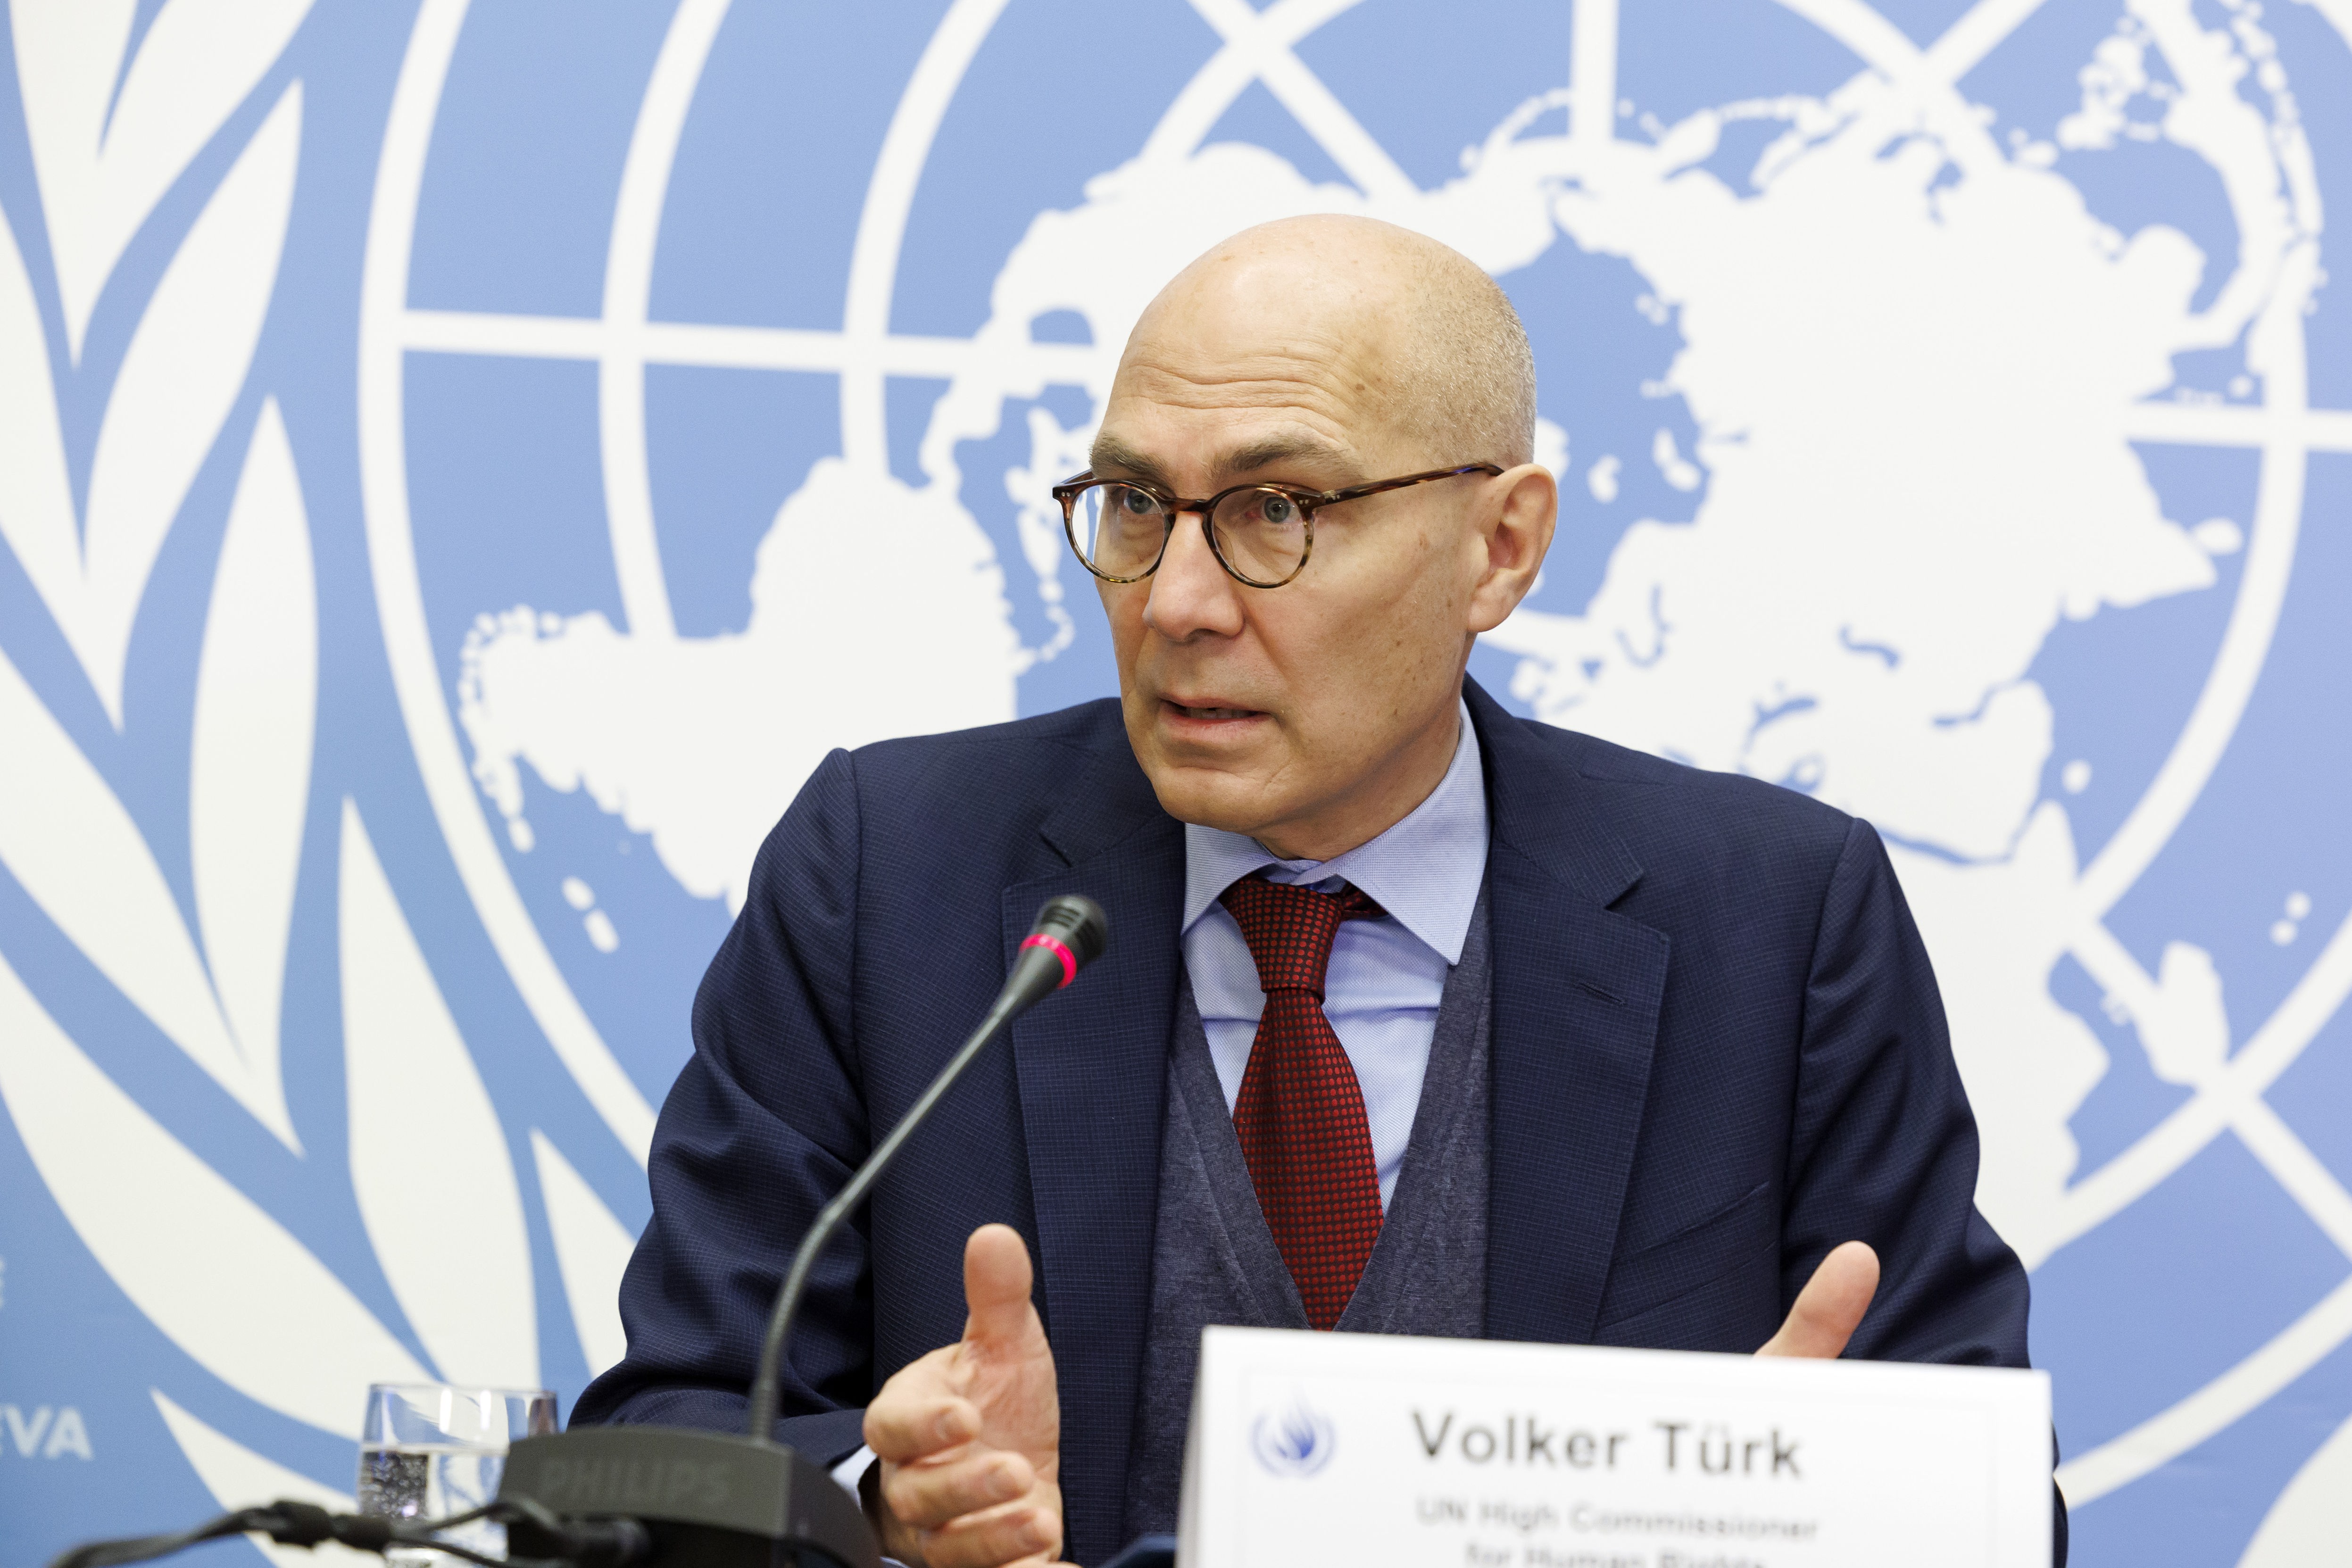 Königreich Eswatini - UNO-Menschenrechtskommissar Türk fordert Aufklärung von Mord an Menschenrechtsanwalt Maseko